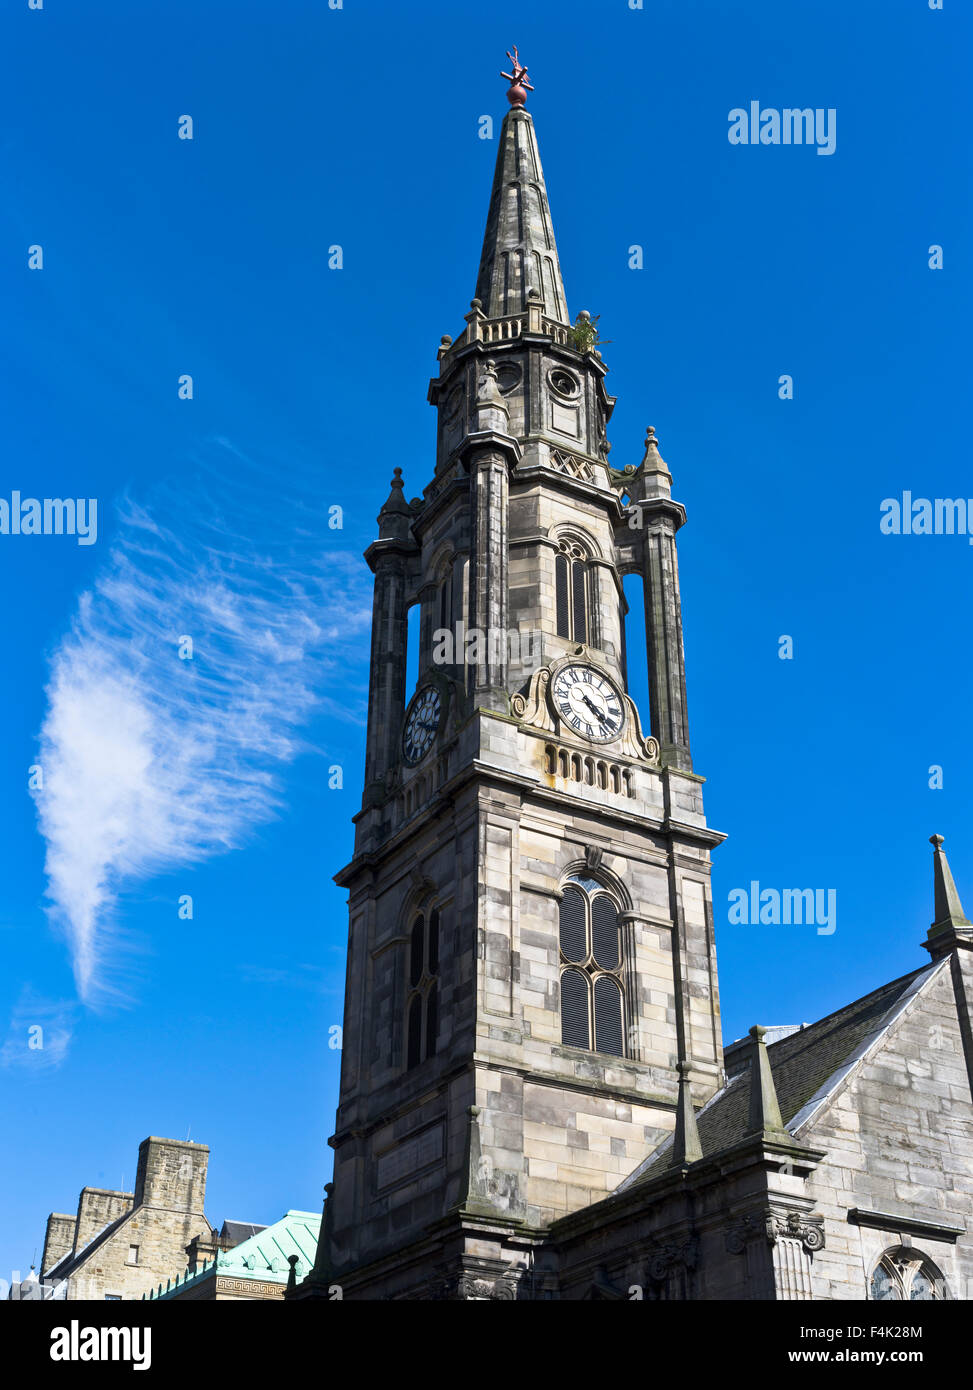 dh le Tron Kirk ROYAL MILE ÉDIMBOURG Église d'Édimbourg flèche Tron Kirk Clocktower scotland clock Clock Banque D'Images